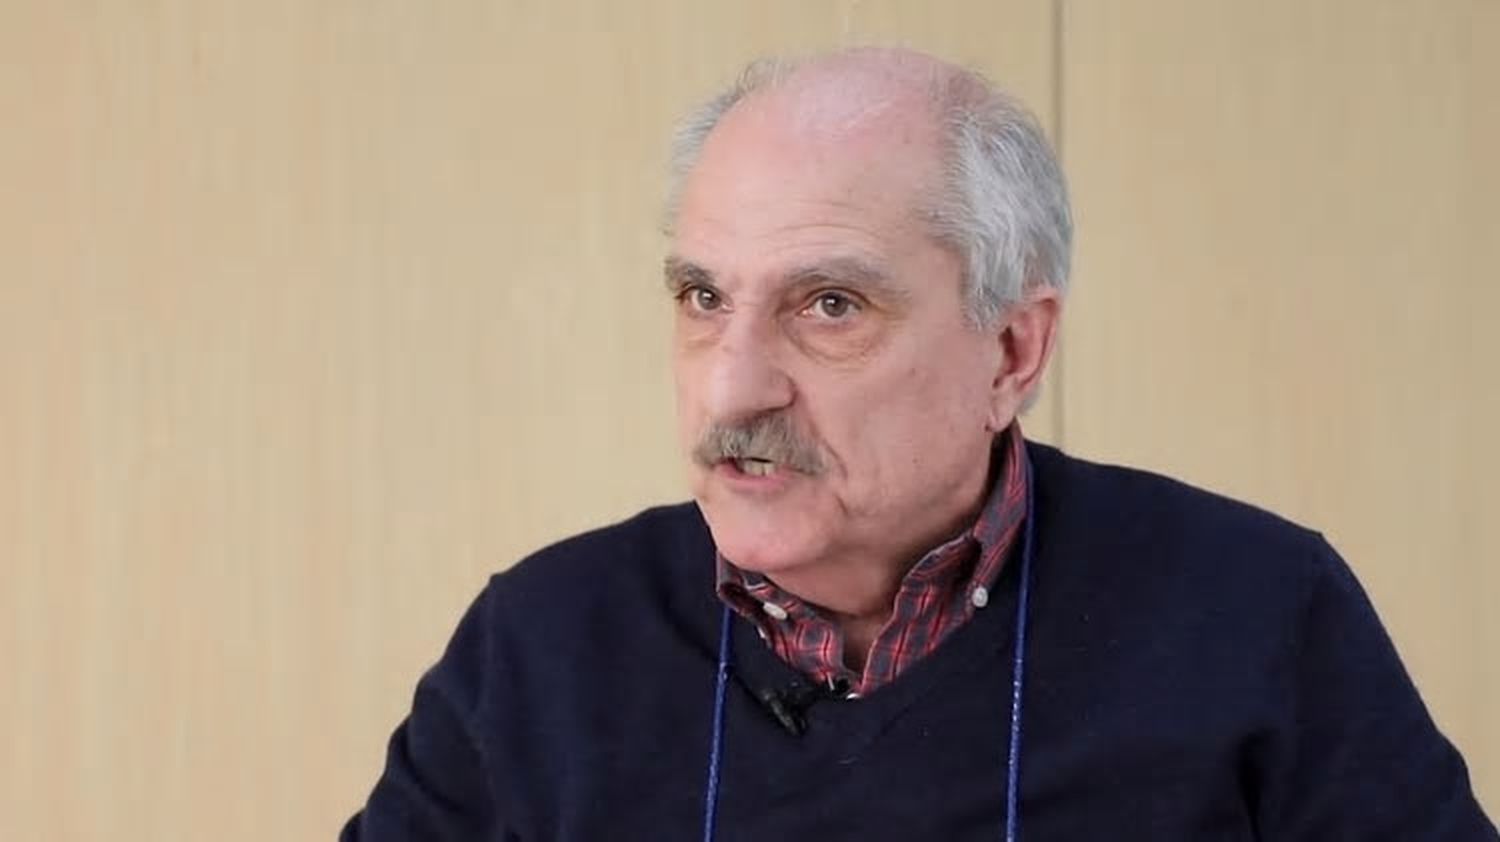 El ex represor Adolfo Scilingo dejó la cárcel en España tras 22 años